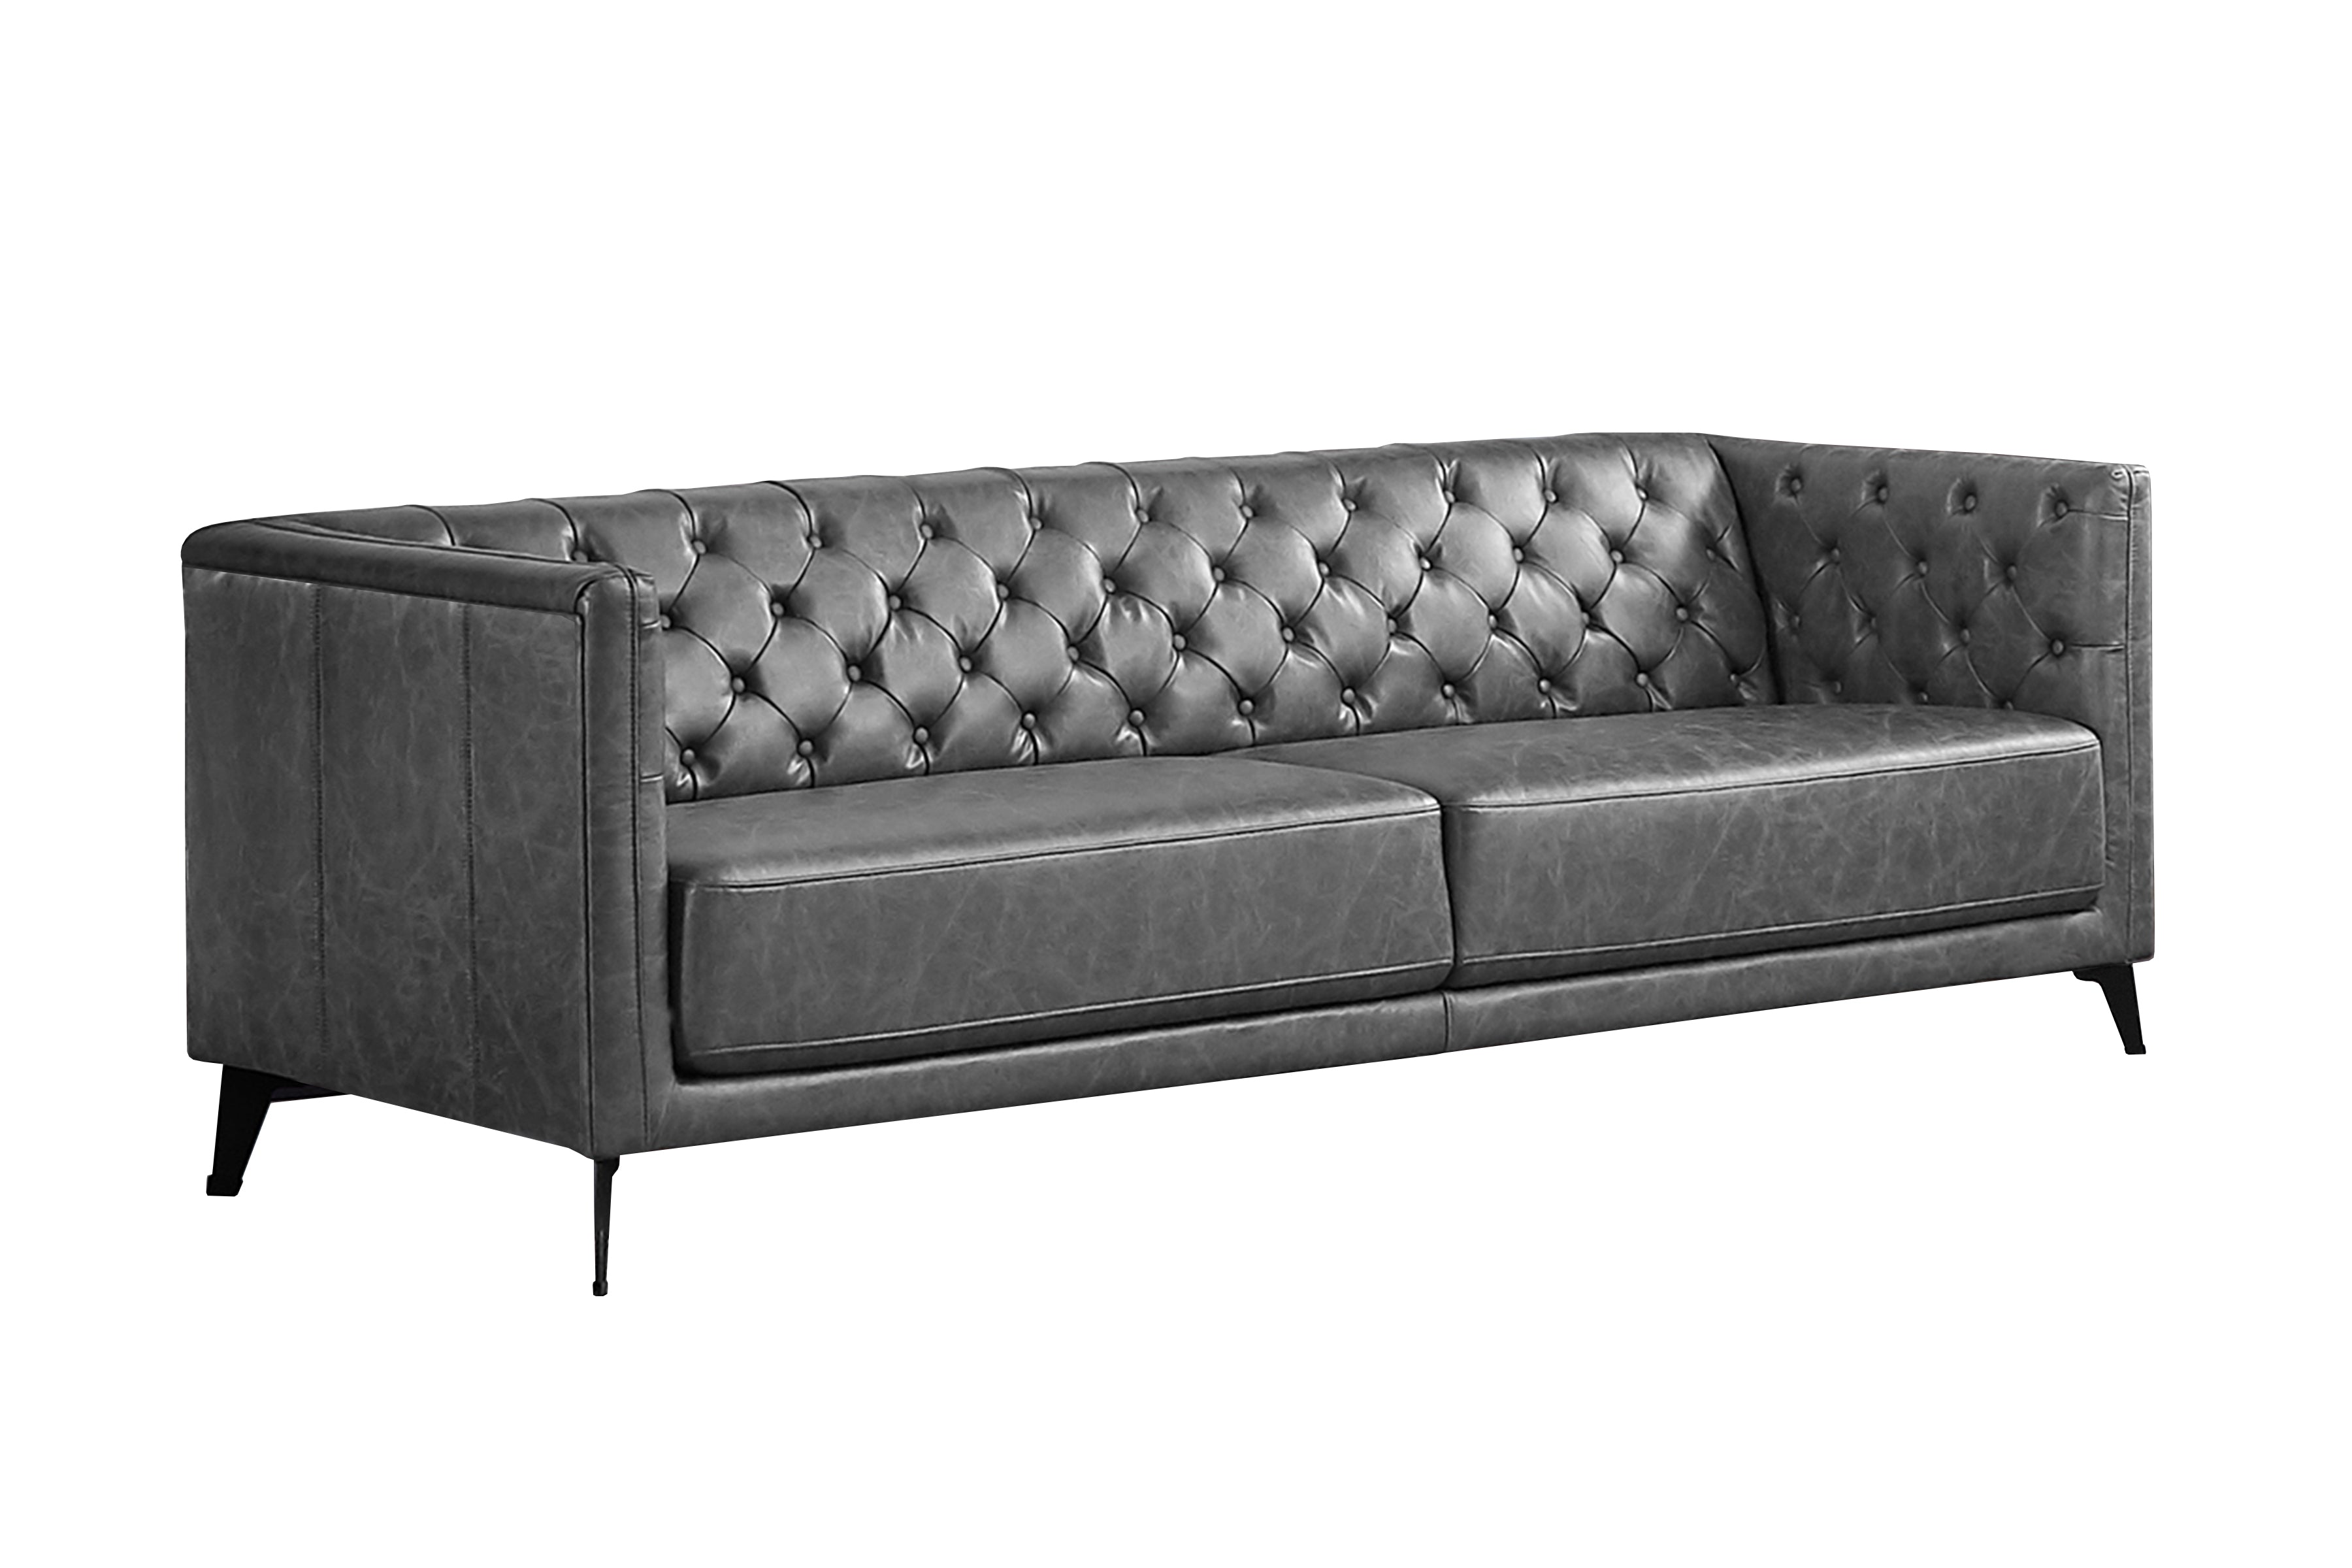 Elegant and Stylish Sofa